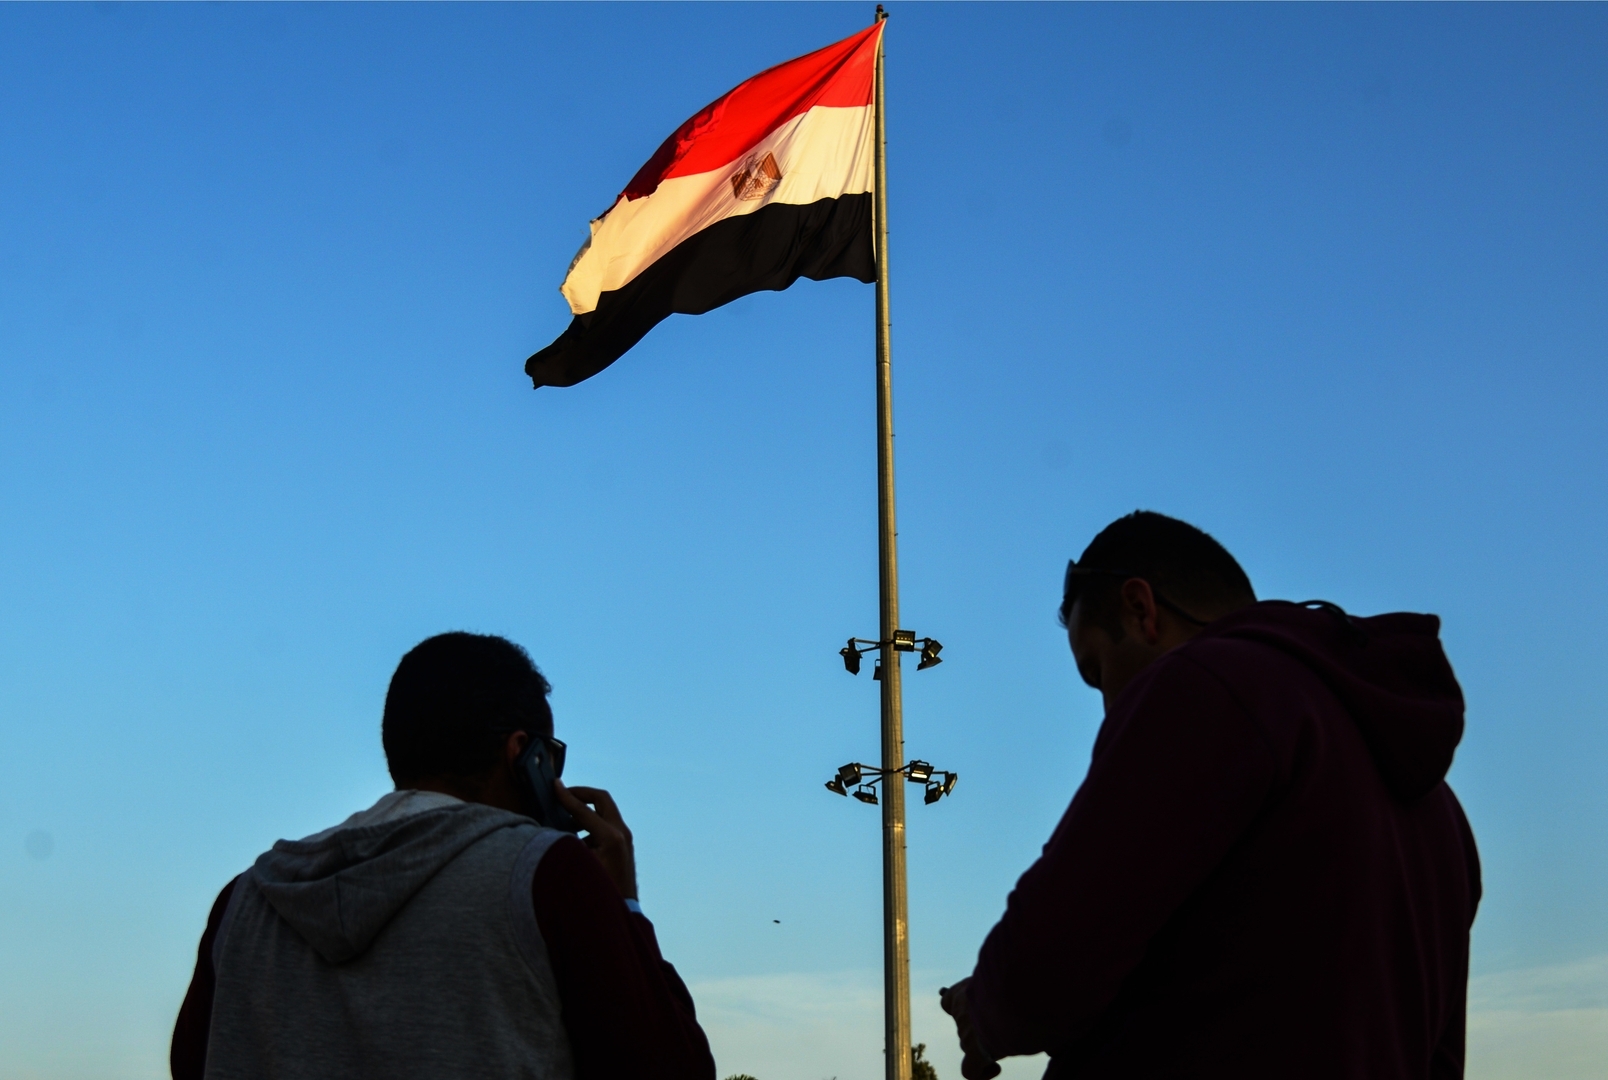 مصر.. تحركات جديدة لإعادة أكبر مصانع البلاد للعمل